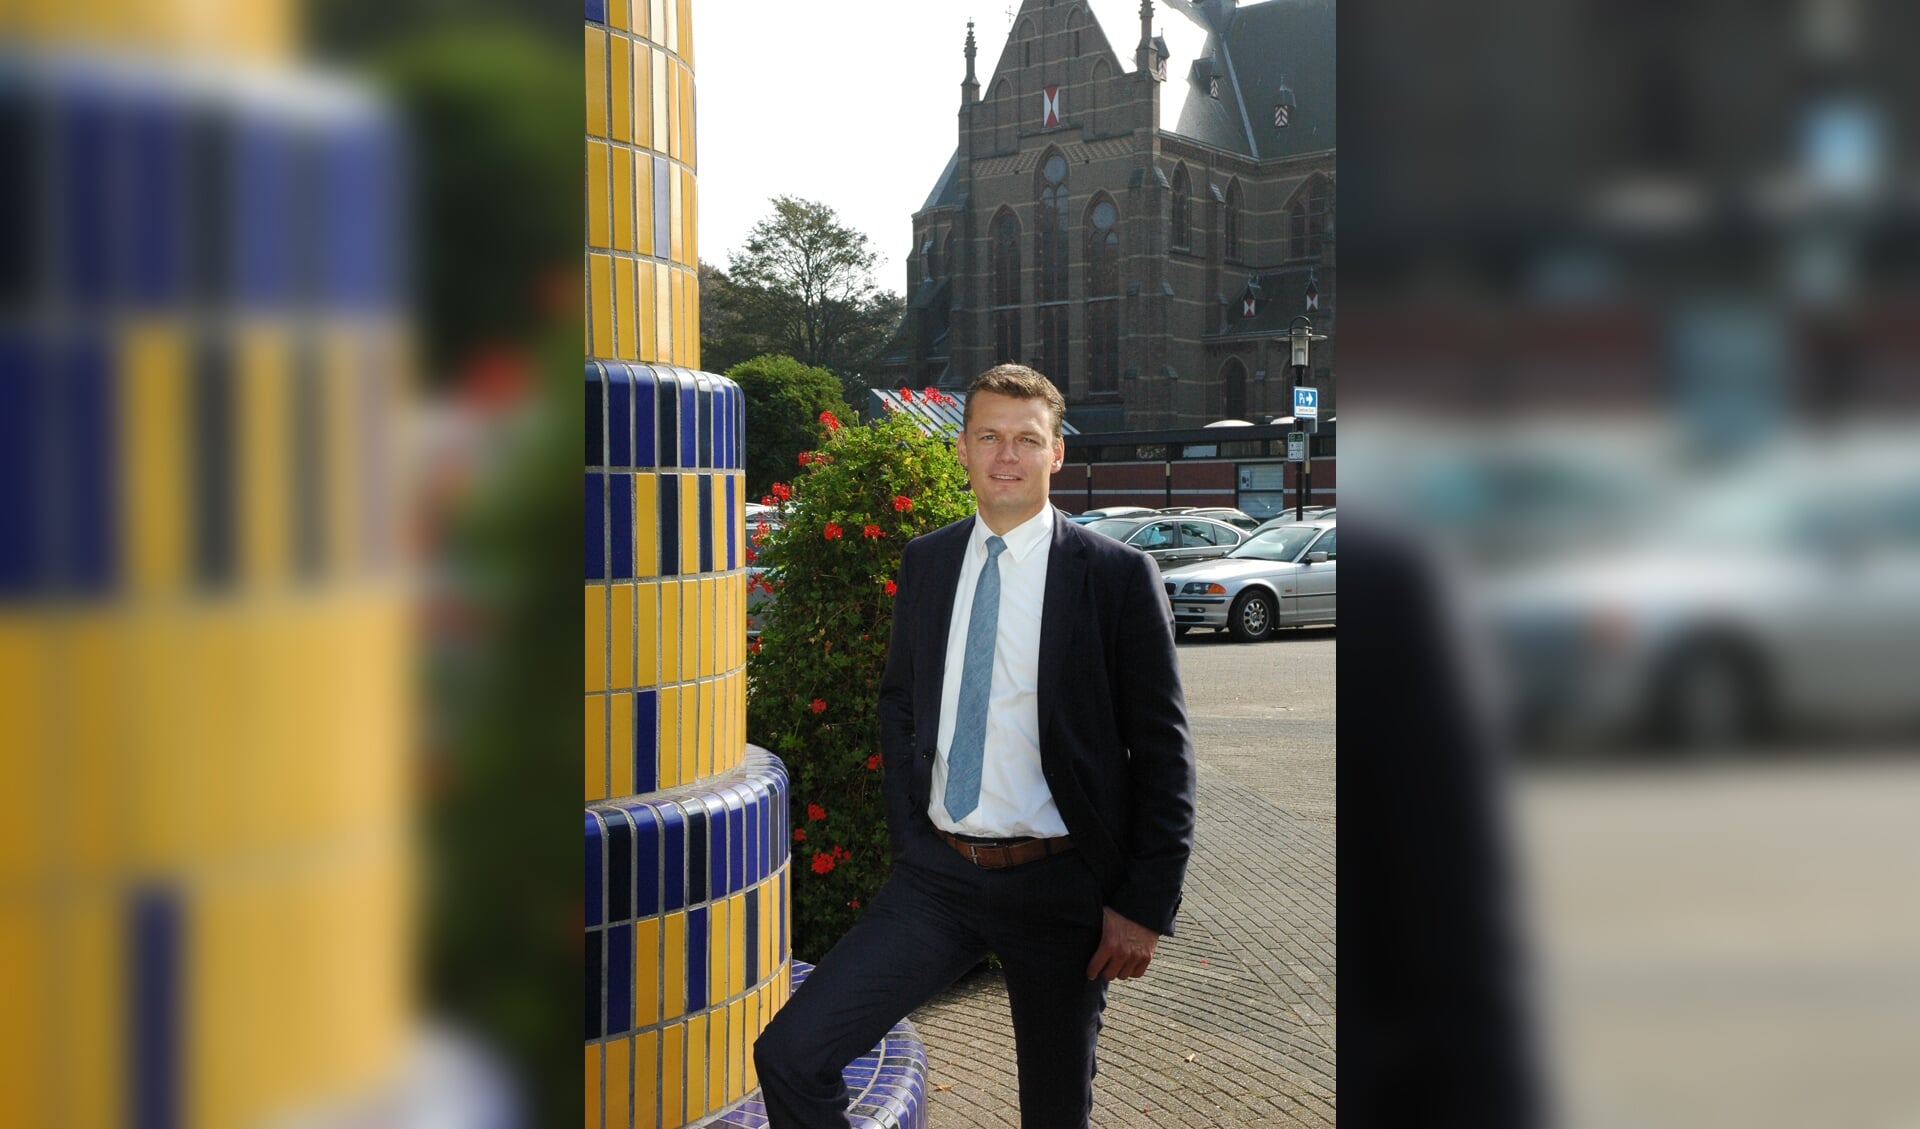 Zo'n drie en een half jaar heeft Evert Jan Nieuwenhuis gewerkt als wethouder in Lisse. Hij verruilt deze gemeente voor Waddinxveen waar hij burgemeester wordt.